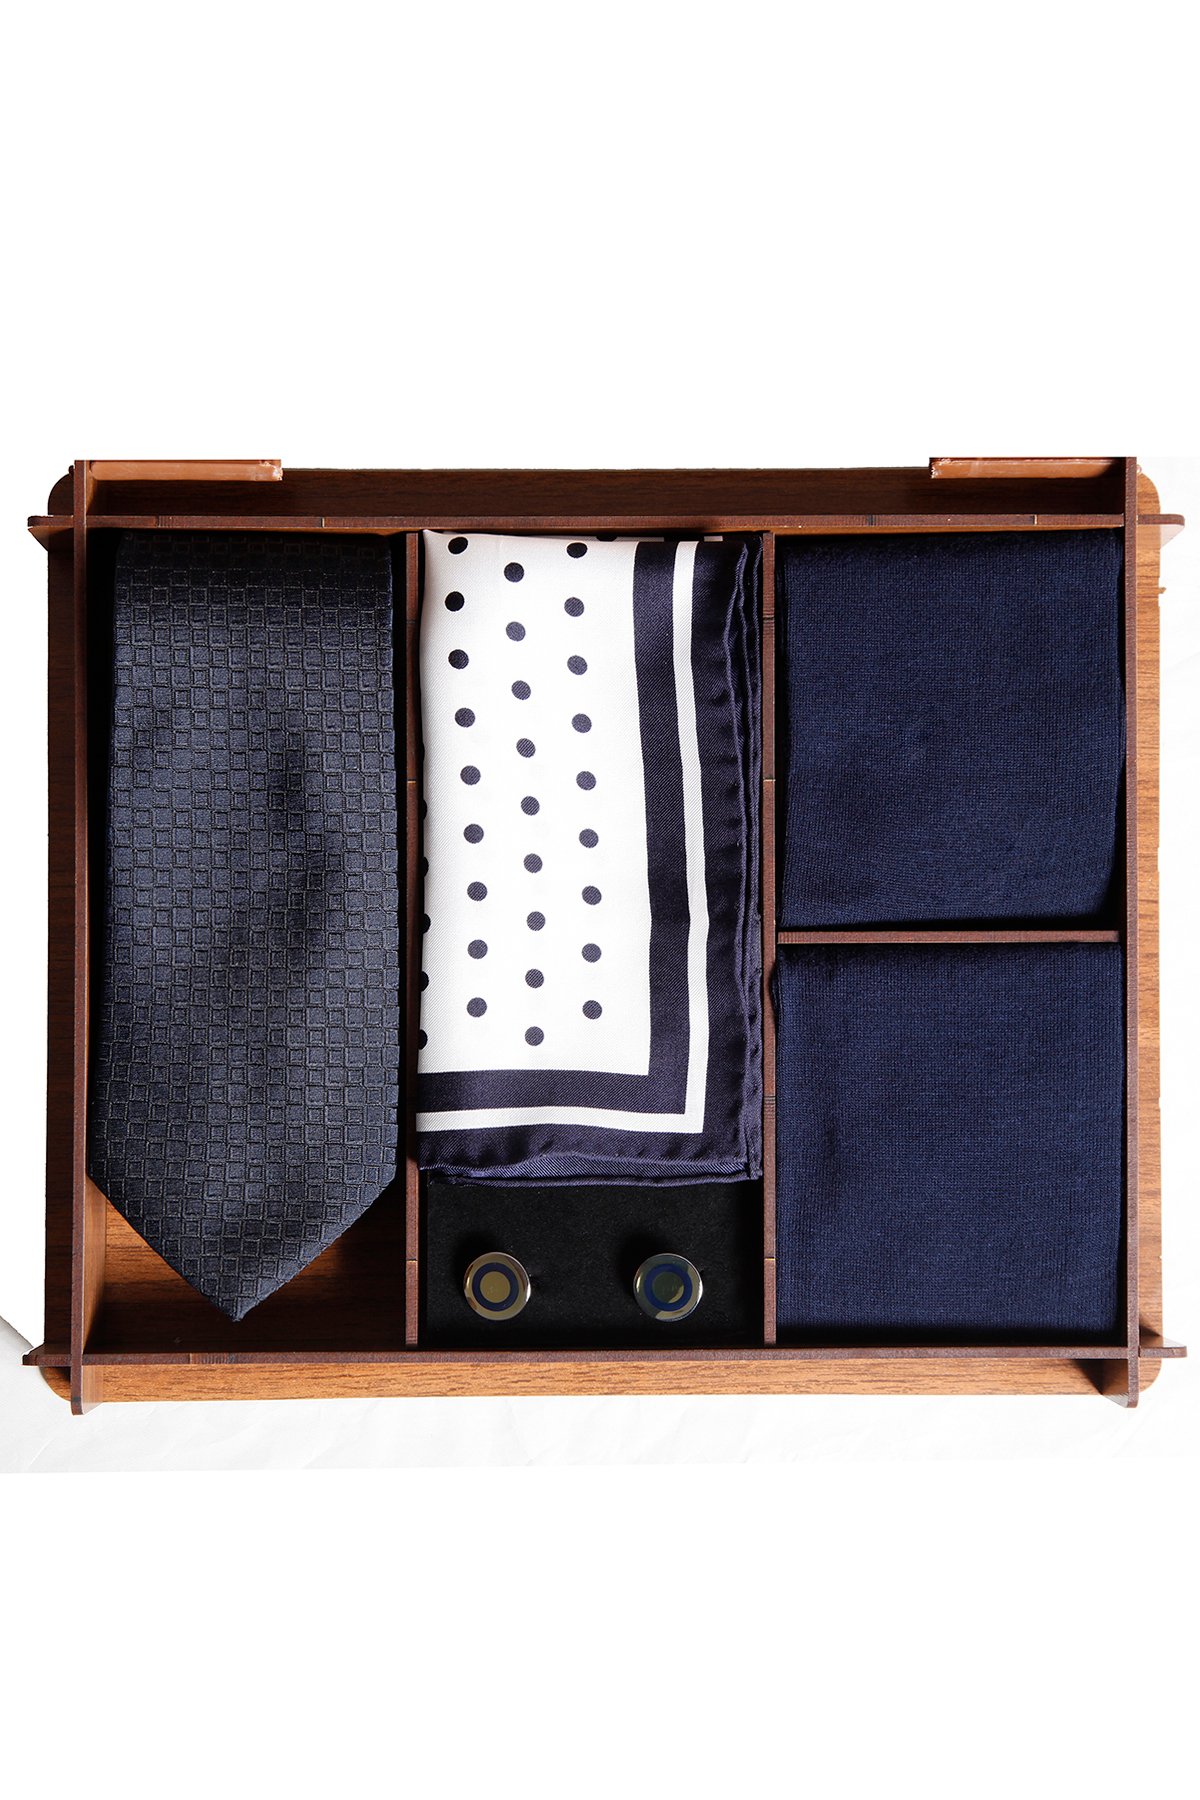 Ahşap kutuda desenli ipek kravatlı erkek hediye seti